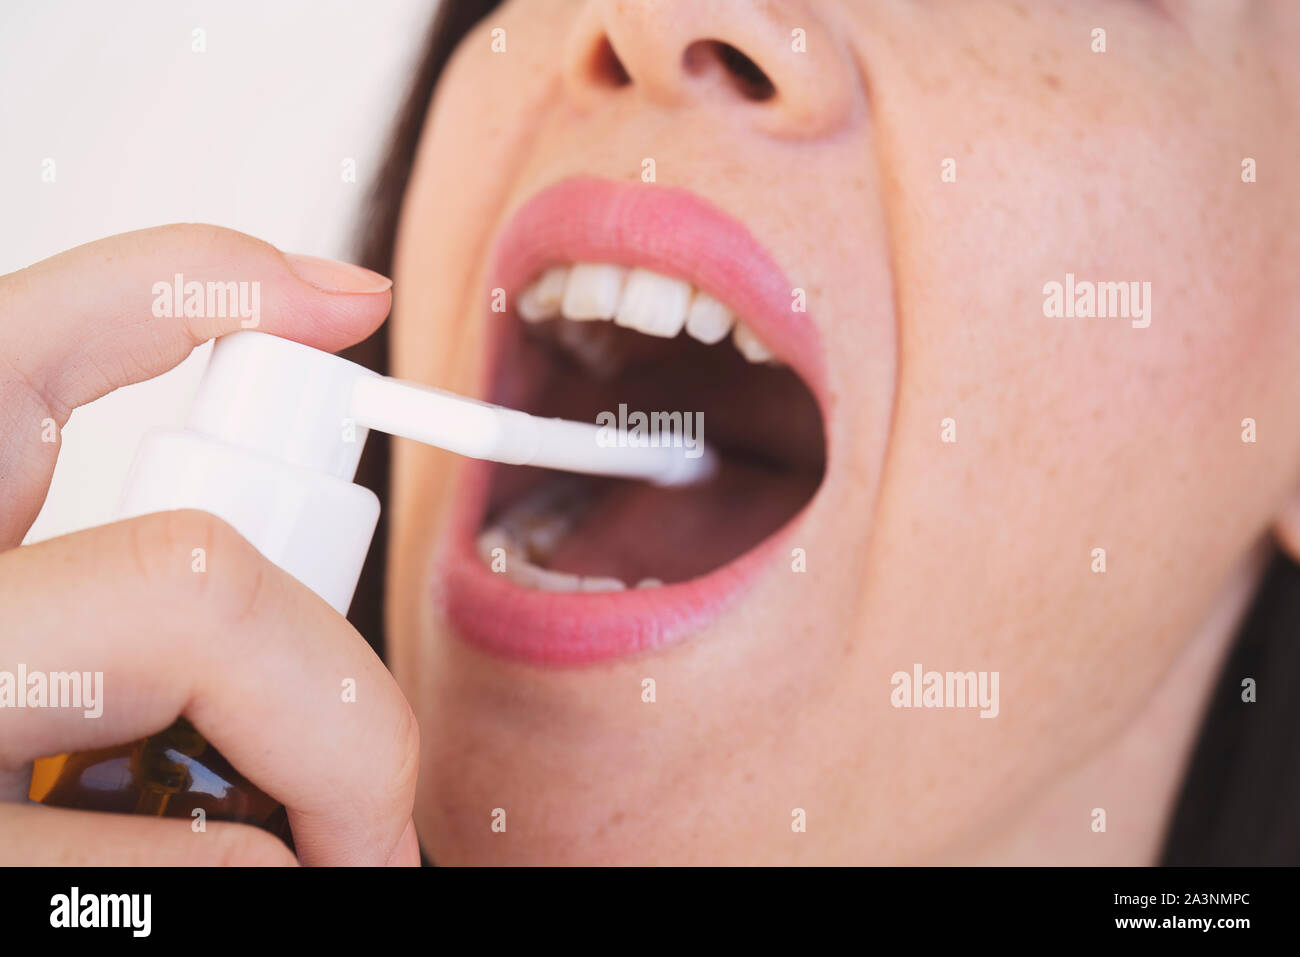 Spray per il mal di gola. Foto di una donna che considera la sua gola con uno spray e spruzza nella sua bocca. Il concetto di salute e malattia. Foto Stock